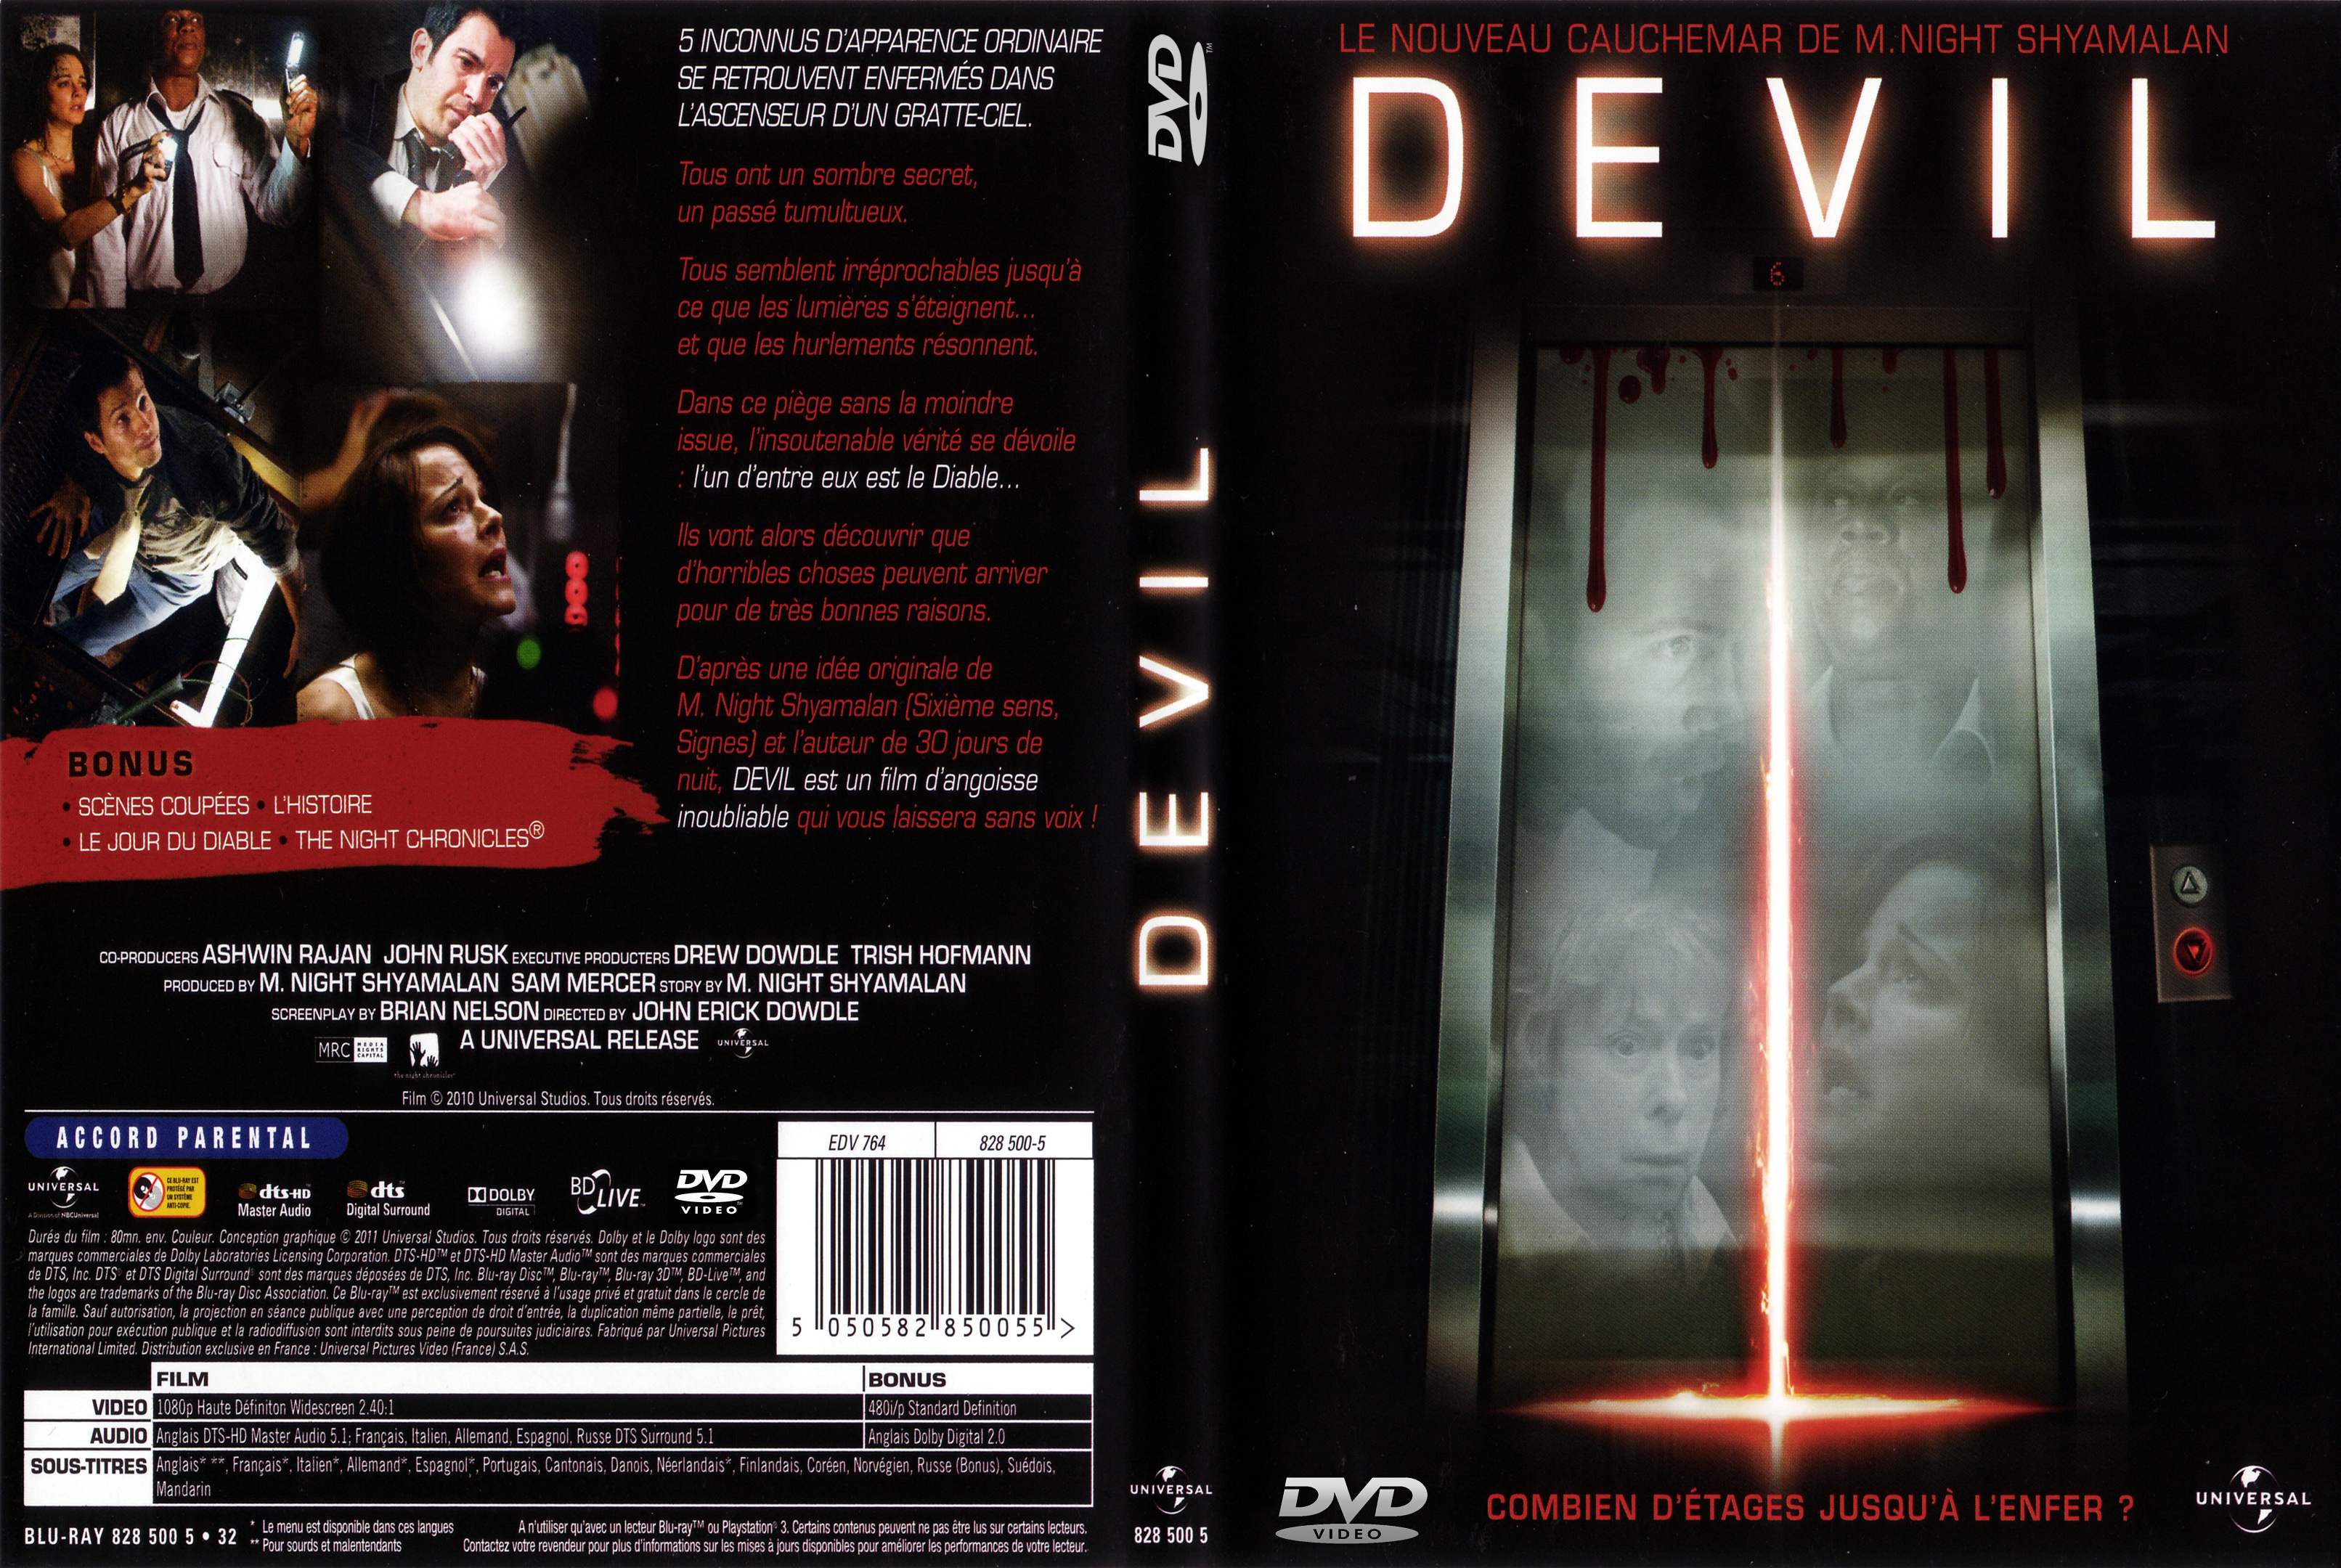 Jaquette DVD Devil custom v2